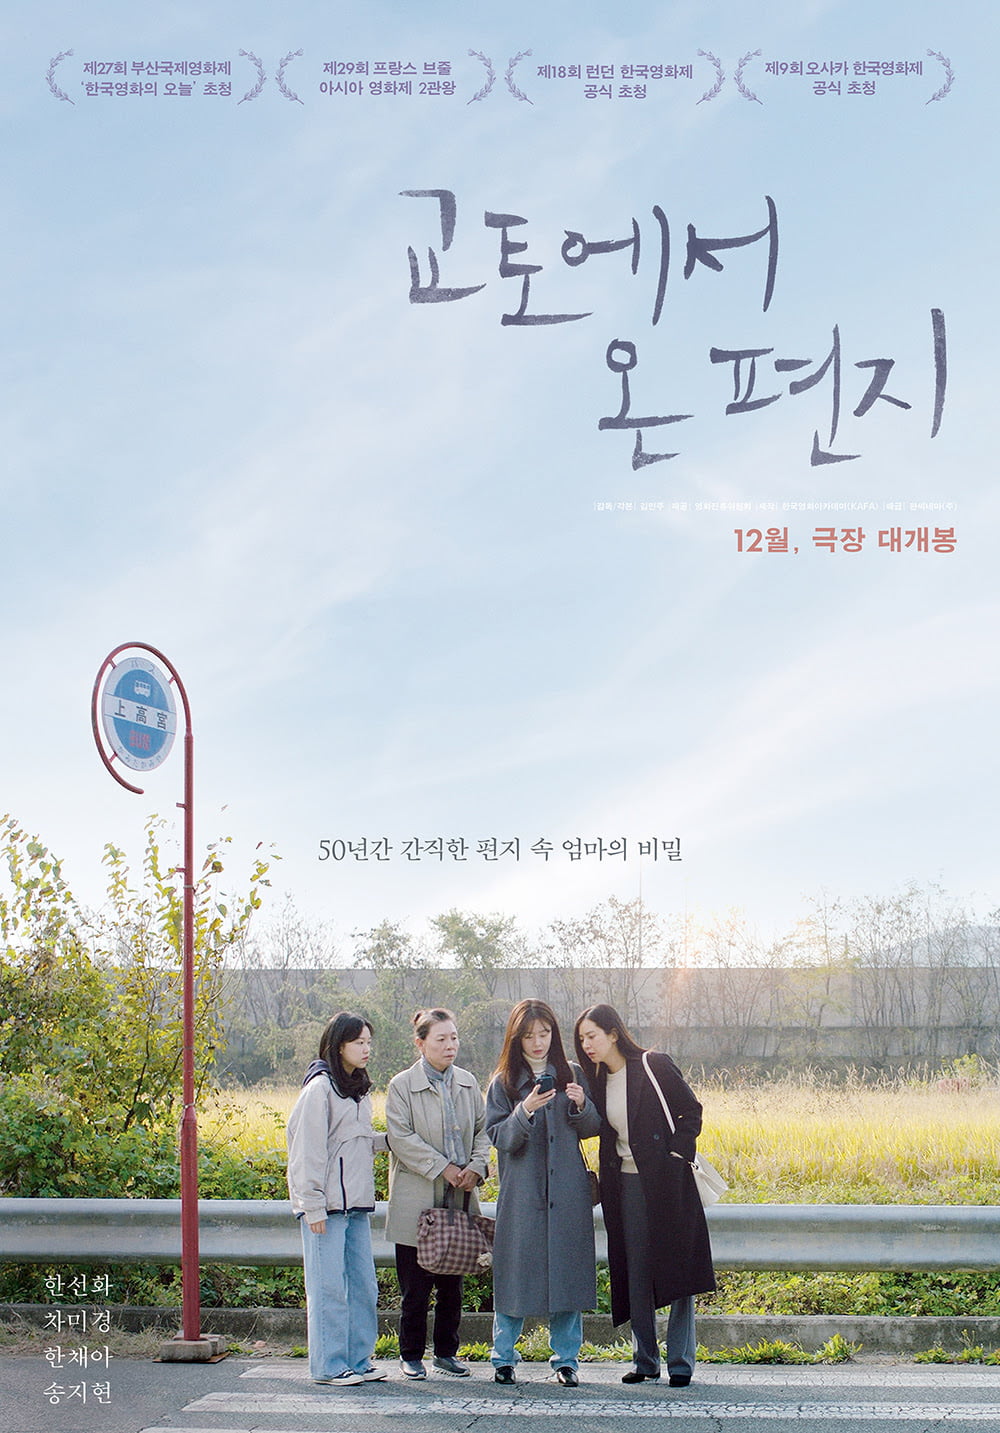 영화 '교토에서 온 편지' 티저 포스터. /사진제공=한국영화아카데미(KAFA)